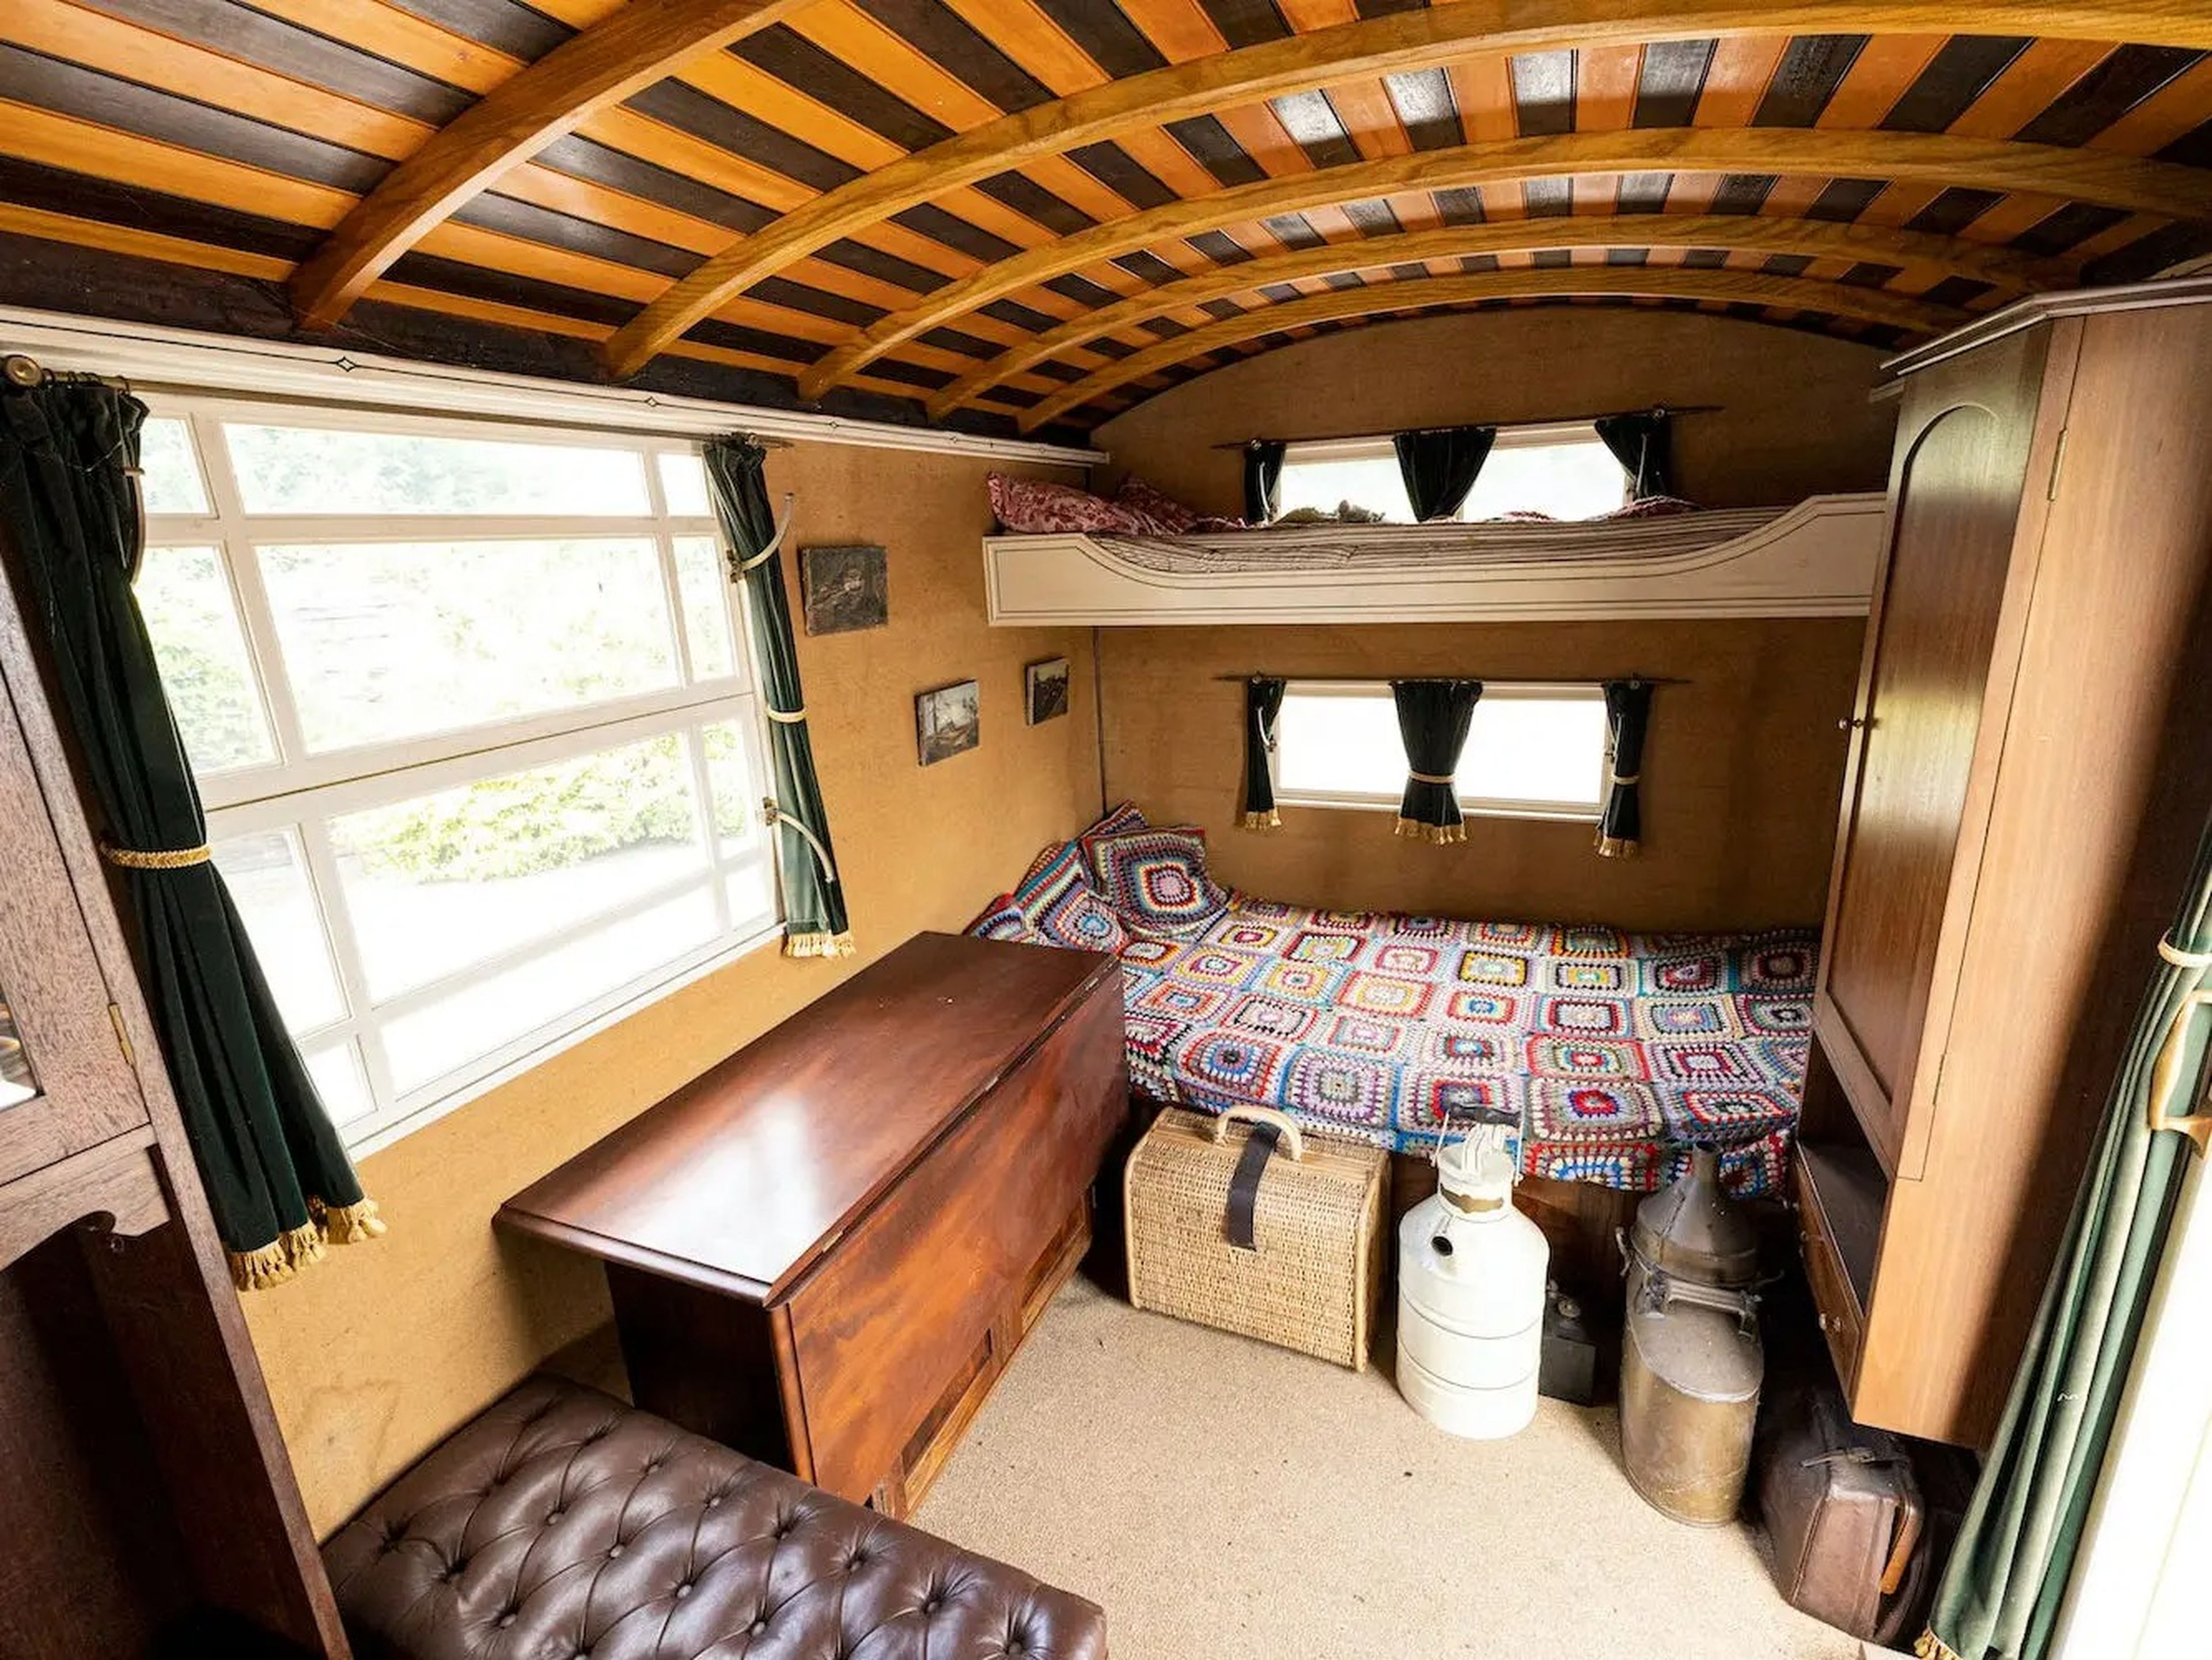 En el interior de la caravana podemos encontrar dos camas grandes y diversos armarios.